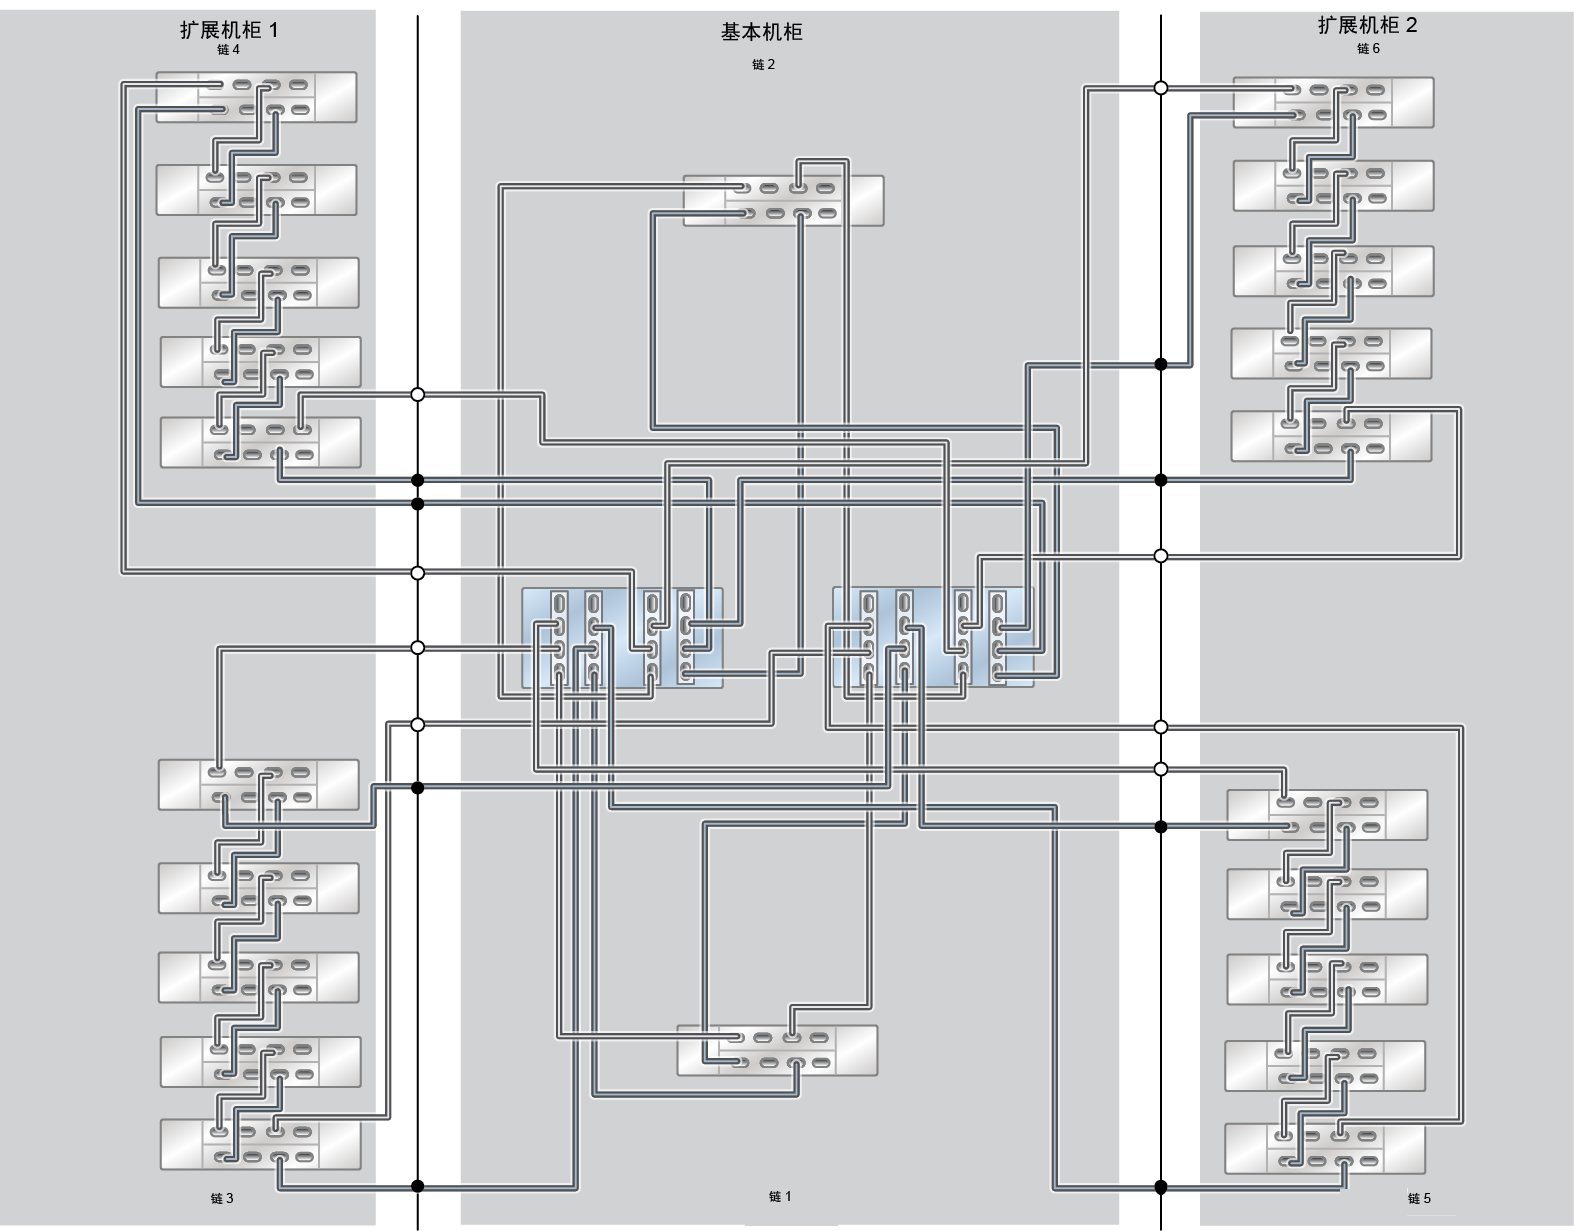 image:此图显示了具有两个扩展机柜（20 个 DE3-24C 磁盘机框）的 ZS7-2 HE Racked System 全闪存。